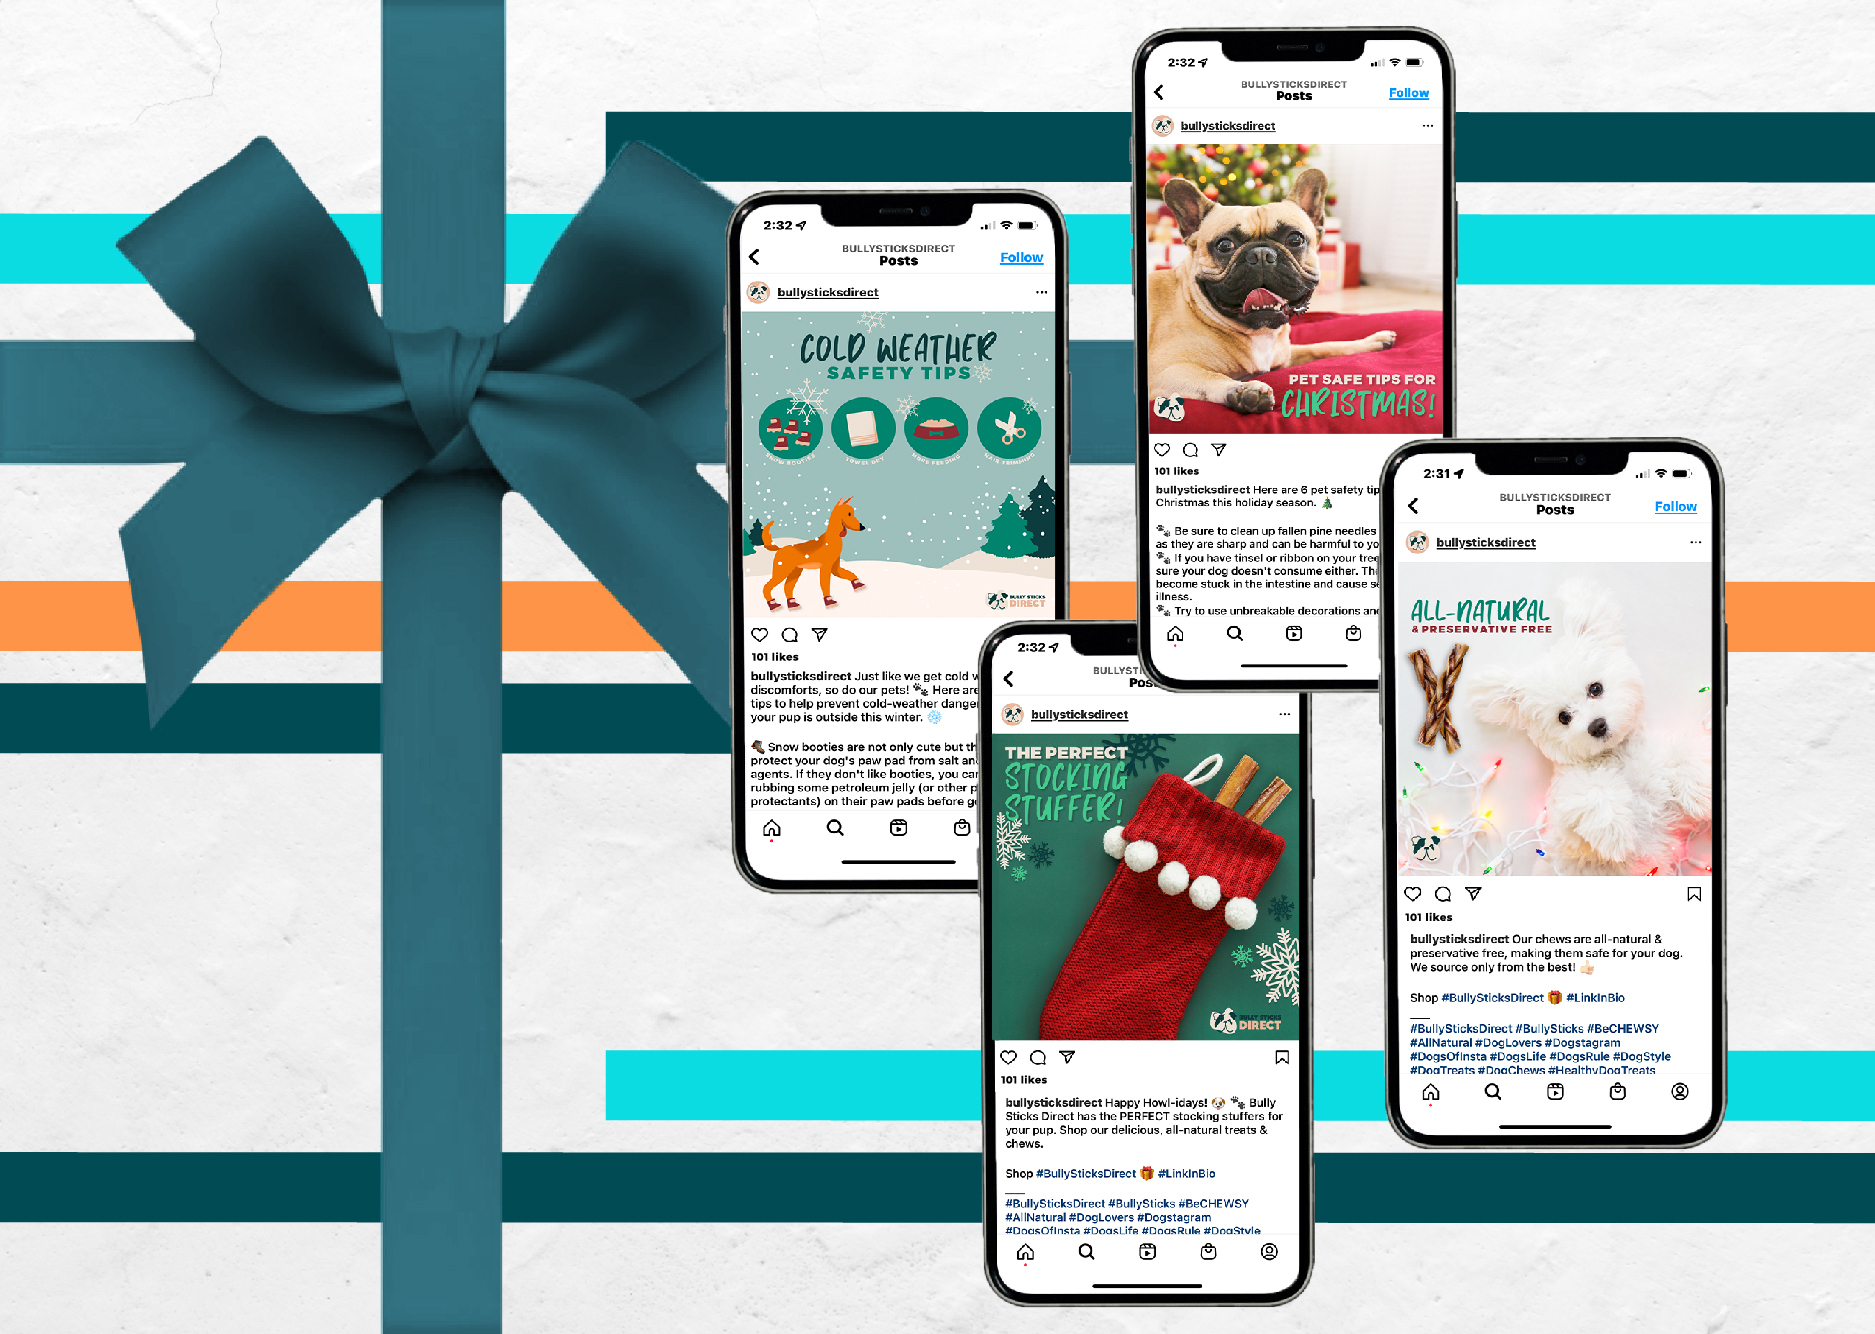 Social Media Marketing for the Holiday Season